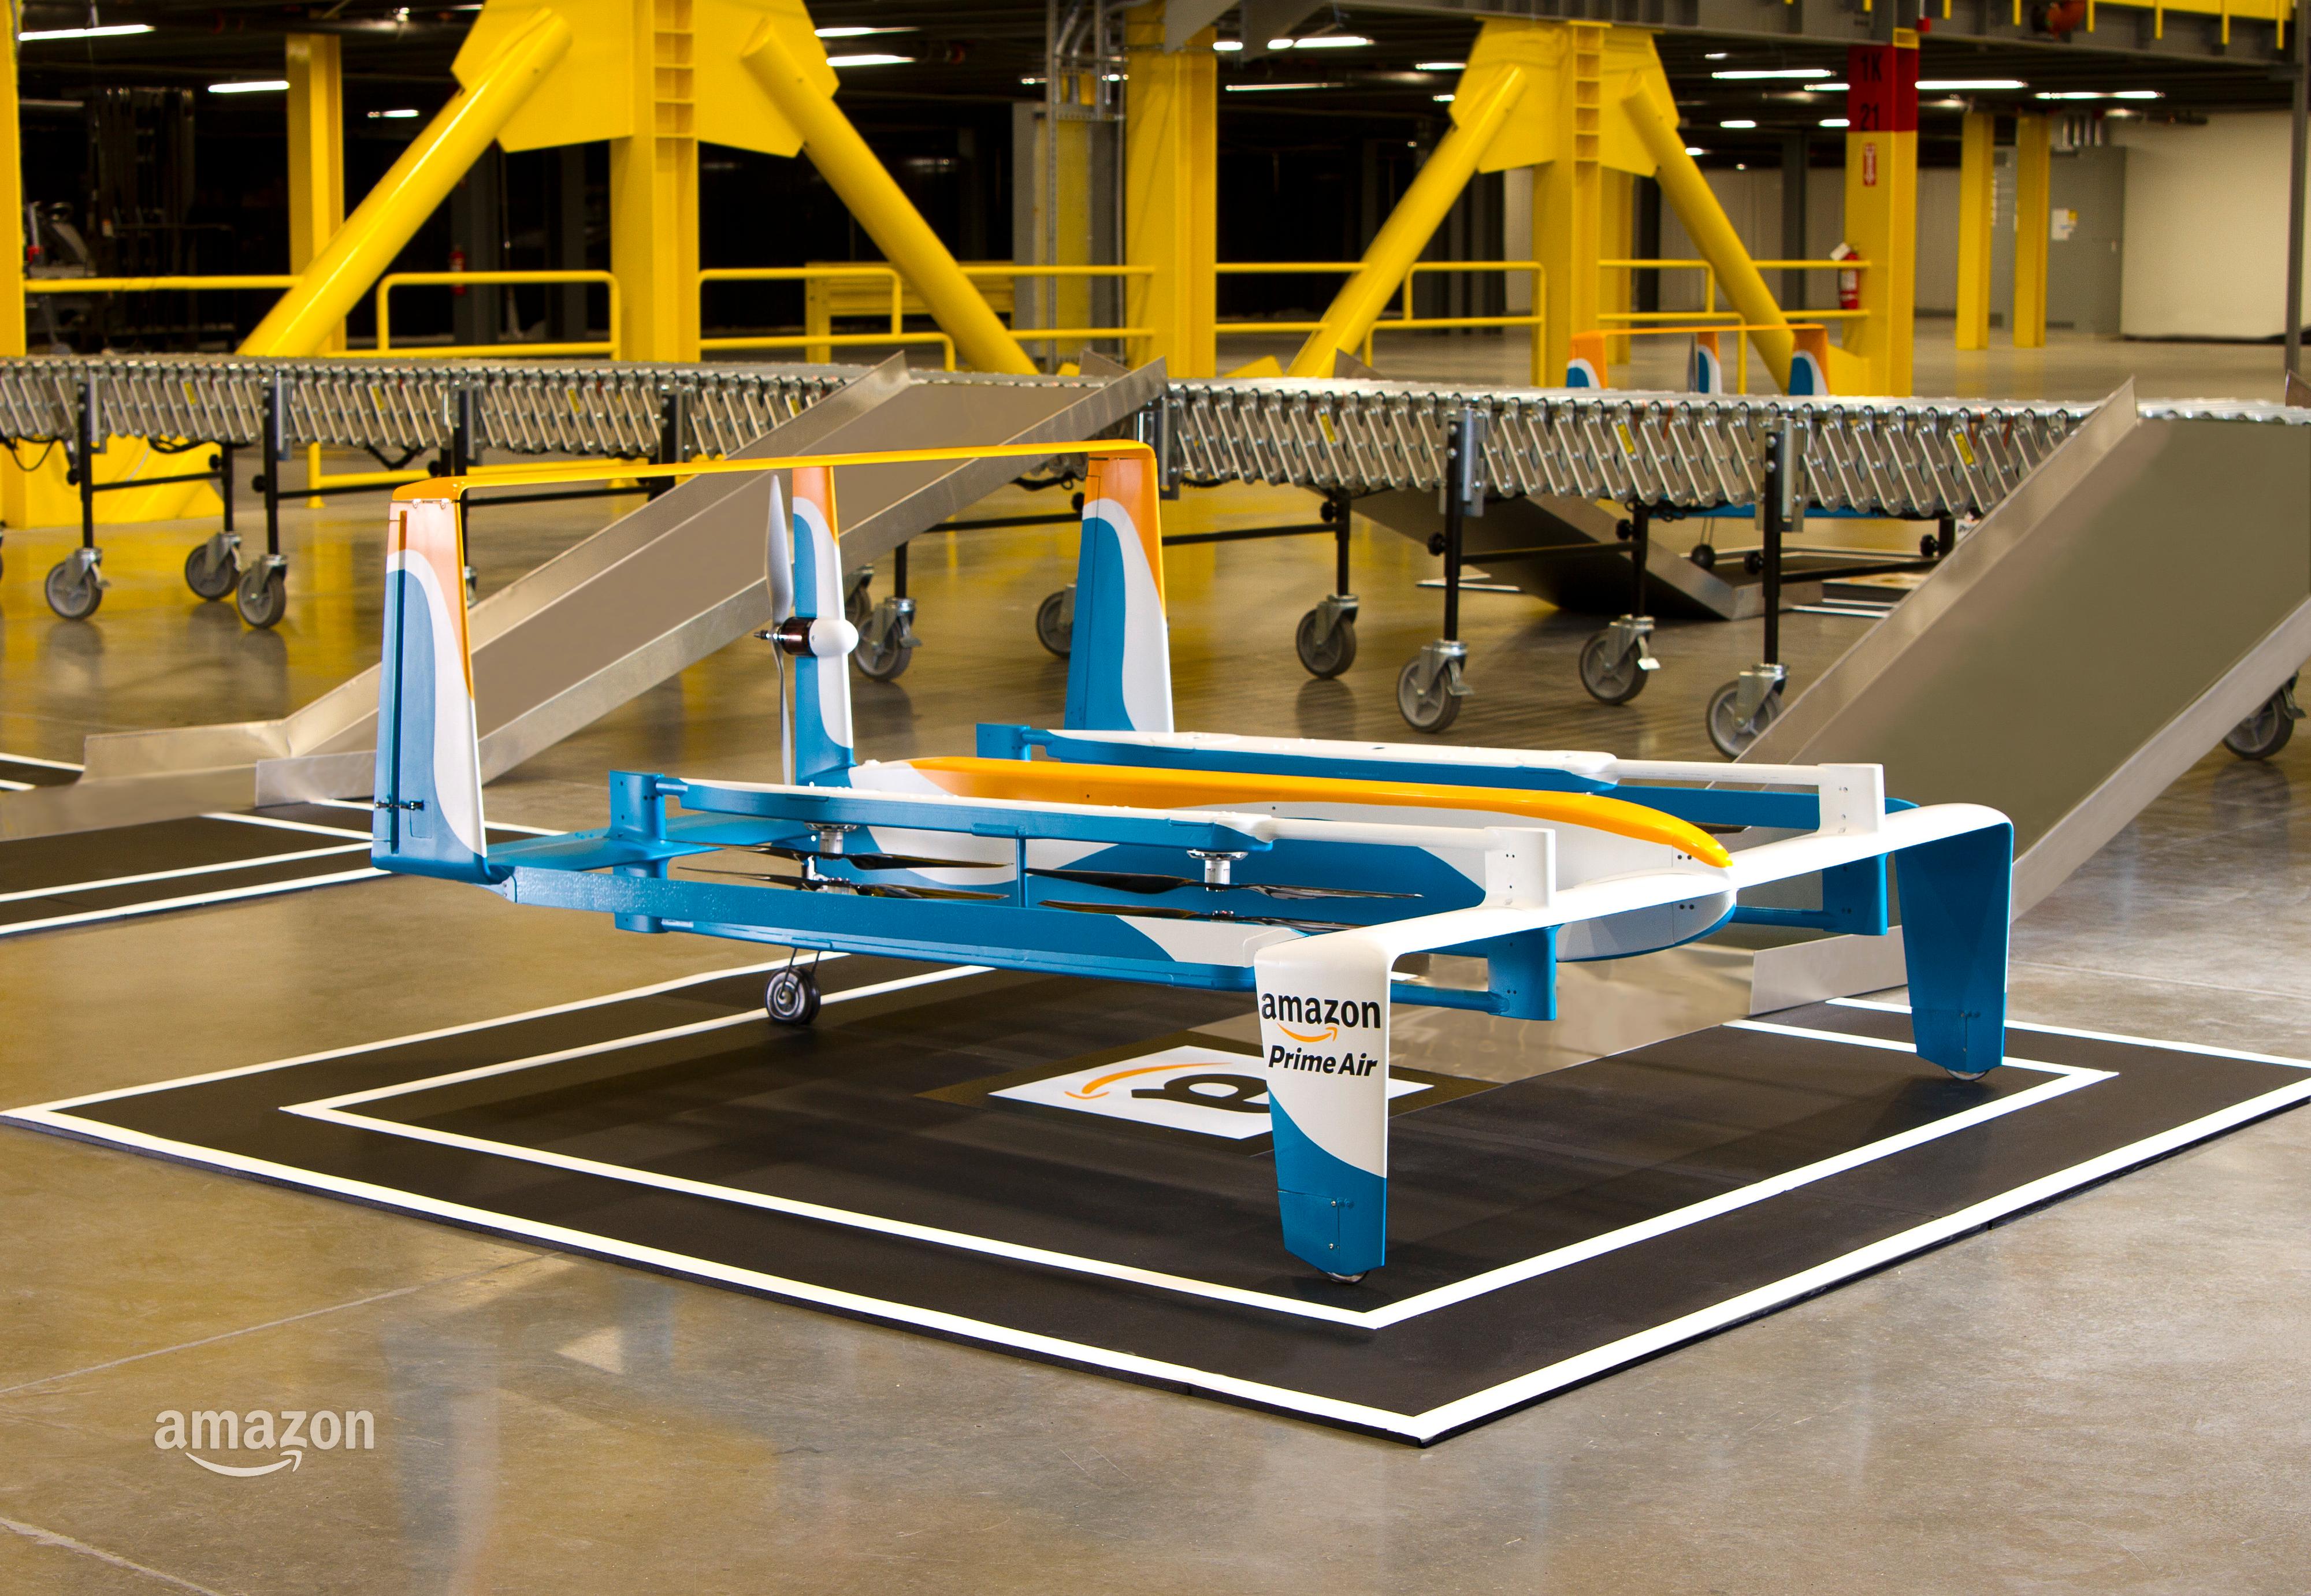 Dronen skal levere pakker på under 30 minutter og kan bære en last på opptil 2,2 kilogram.